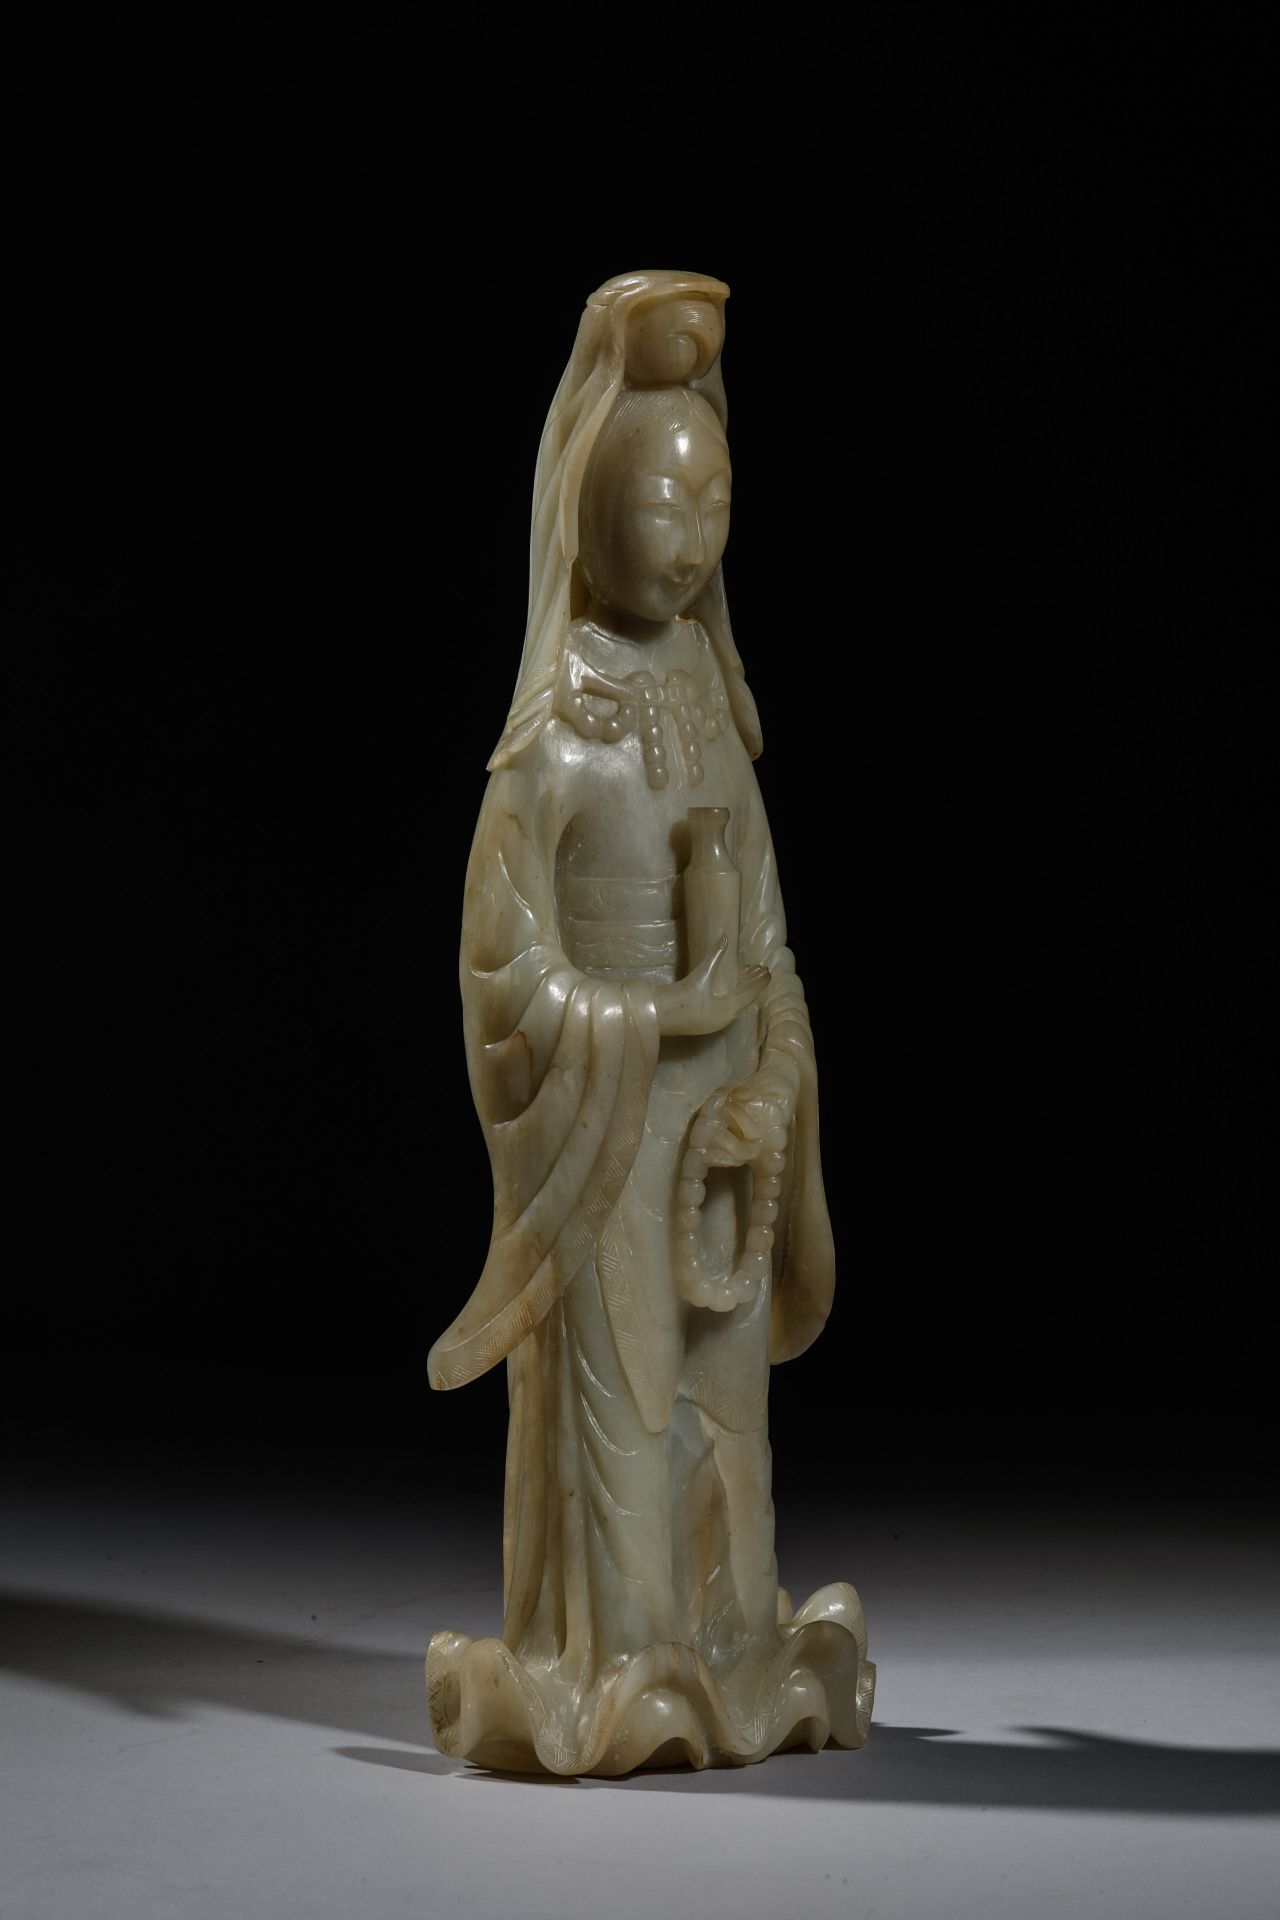 Le Boddhisattva « Kwan yin » debout vêtu d’une robe drapé à large manches et plis bouillonnants - Image 2 of 5